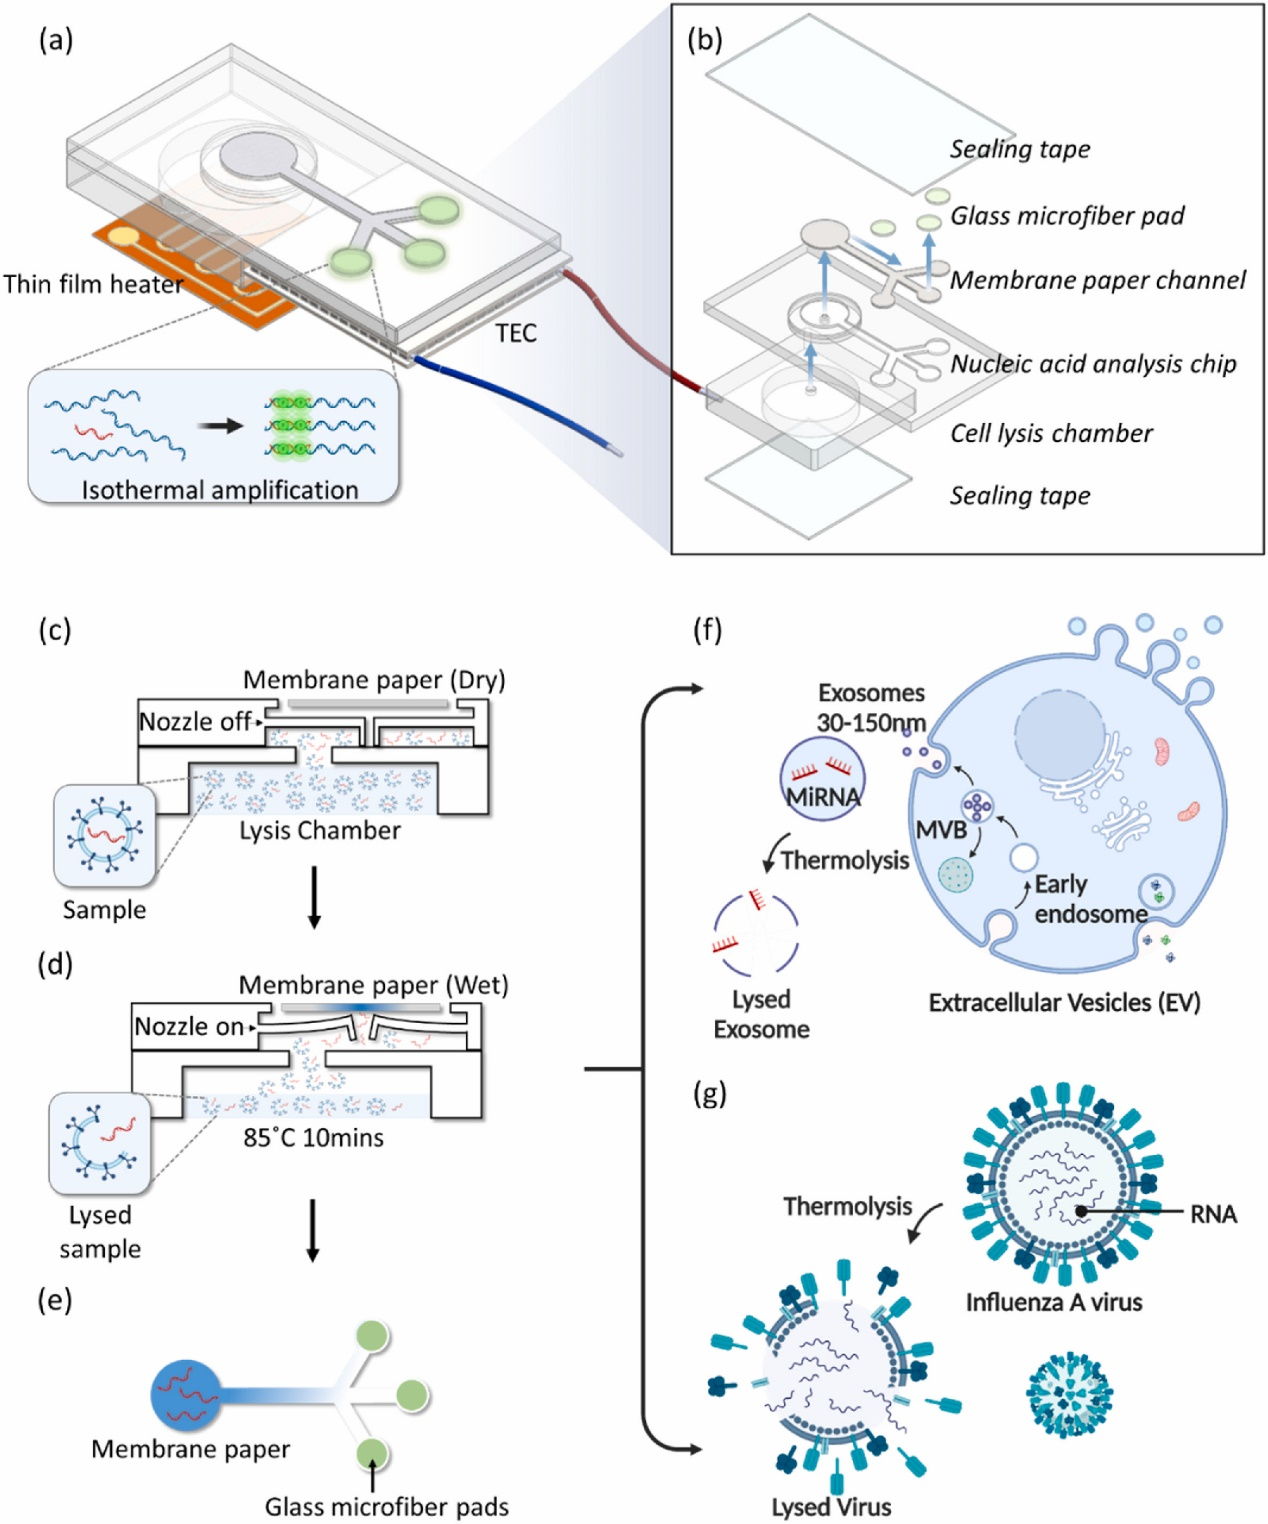 Biosens Bioelectron丨芯片裂解和纸基传感器的集成系统 用于快速检测病毒和外泌体RNA